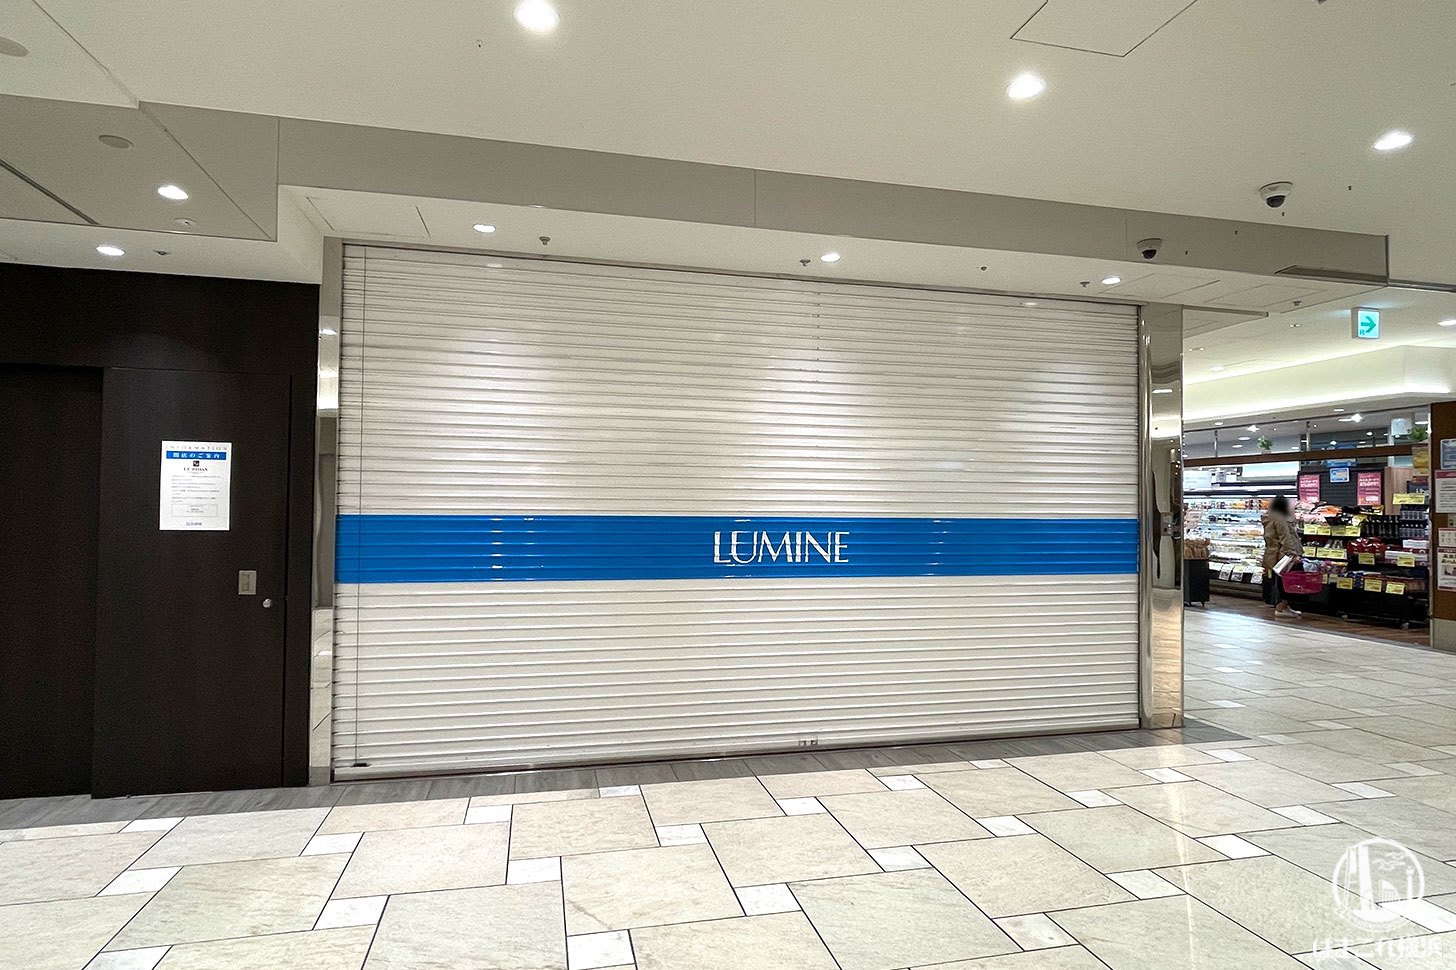 ルビアン ルミネ横浜店が2021年3月14日に閉店、跡地はプラザが拡張予定